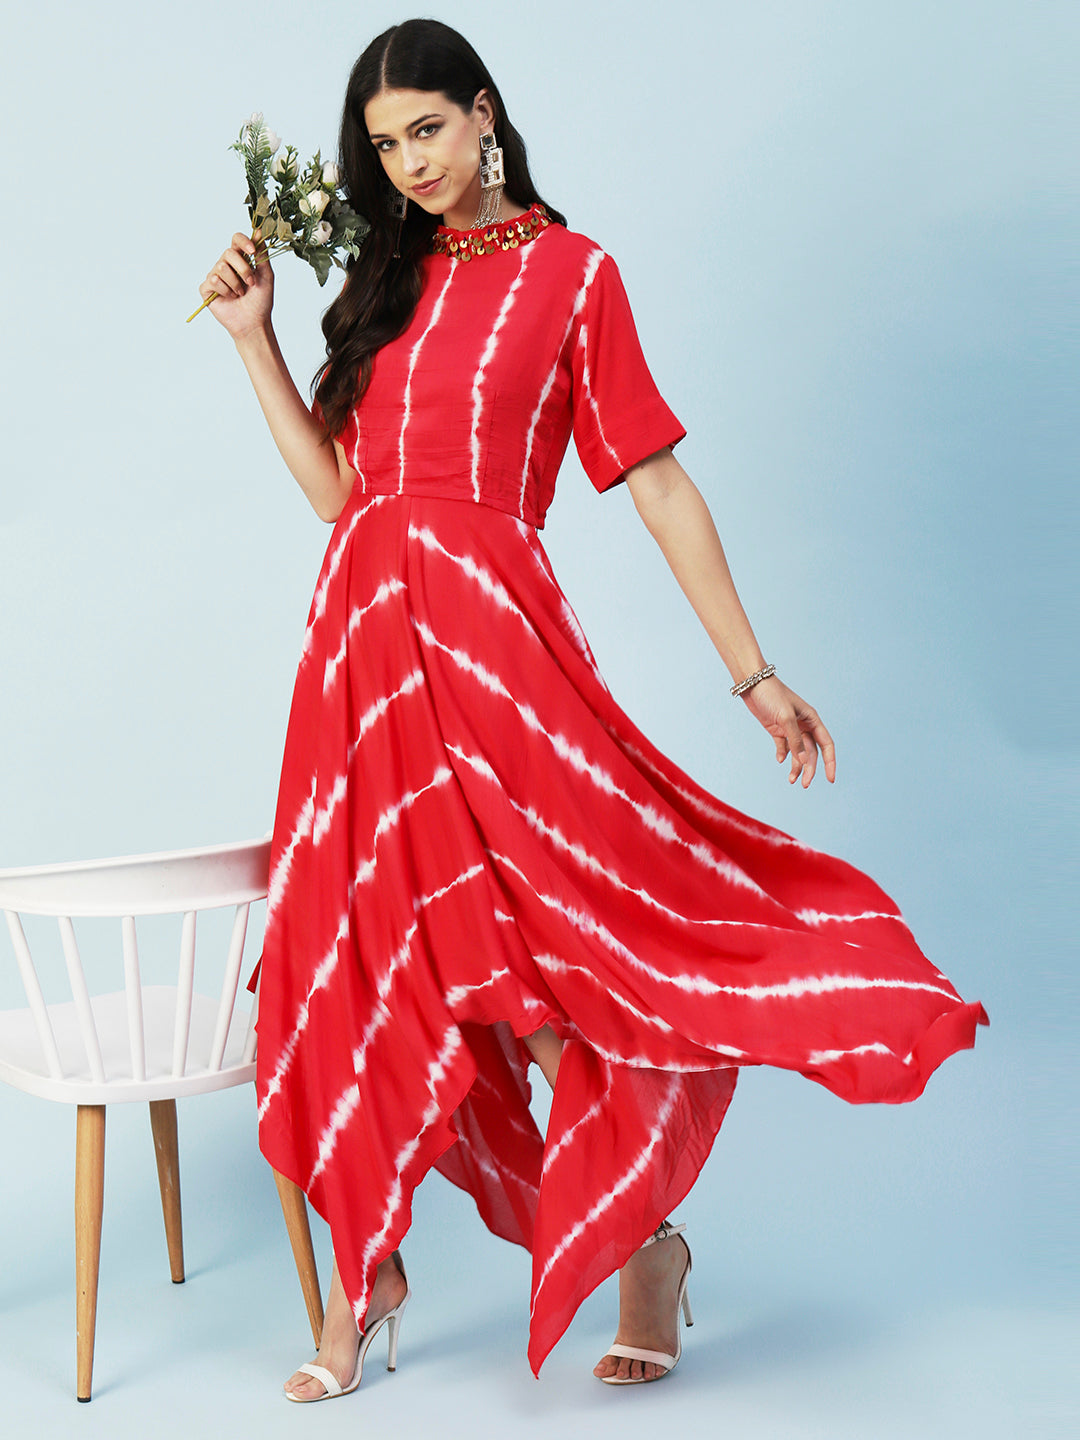 Crop top lehenga | lehenga designs latest | long skirts for women | party  wear lehenga | Lehenga designs simple, Indian bridesmaid dresses, Long  skirt top designs